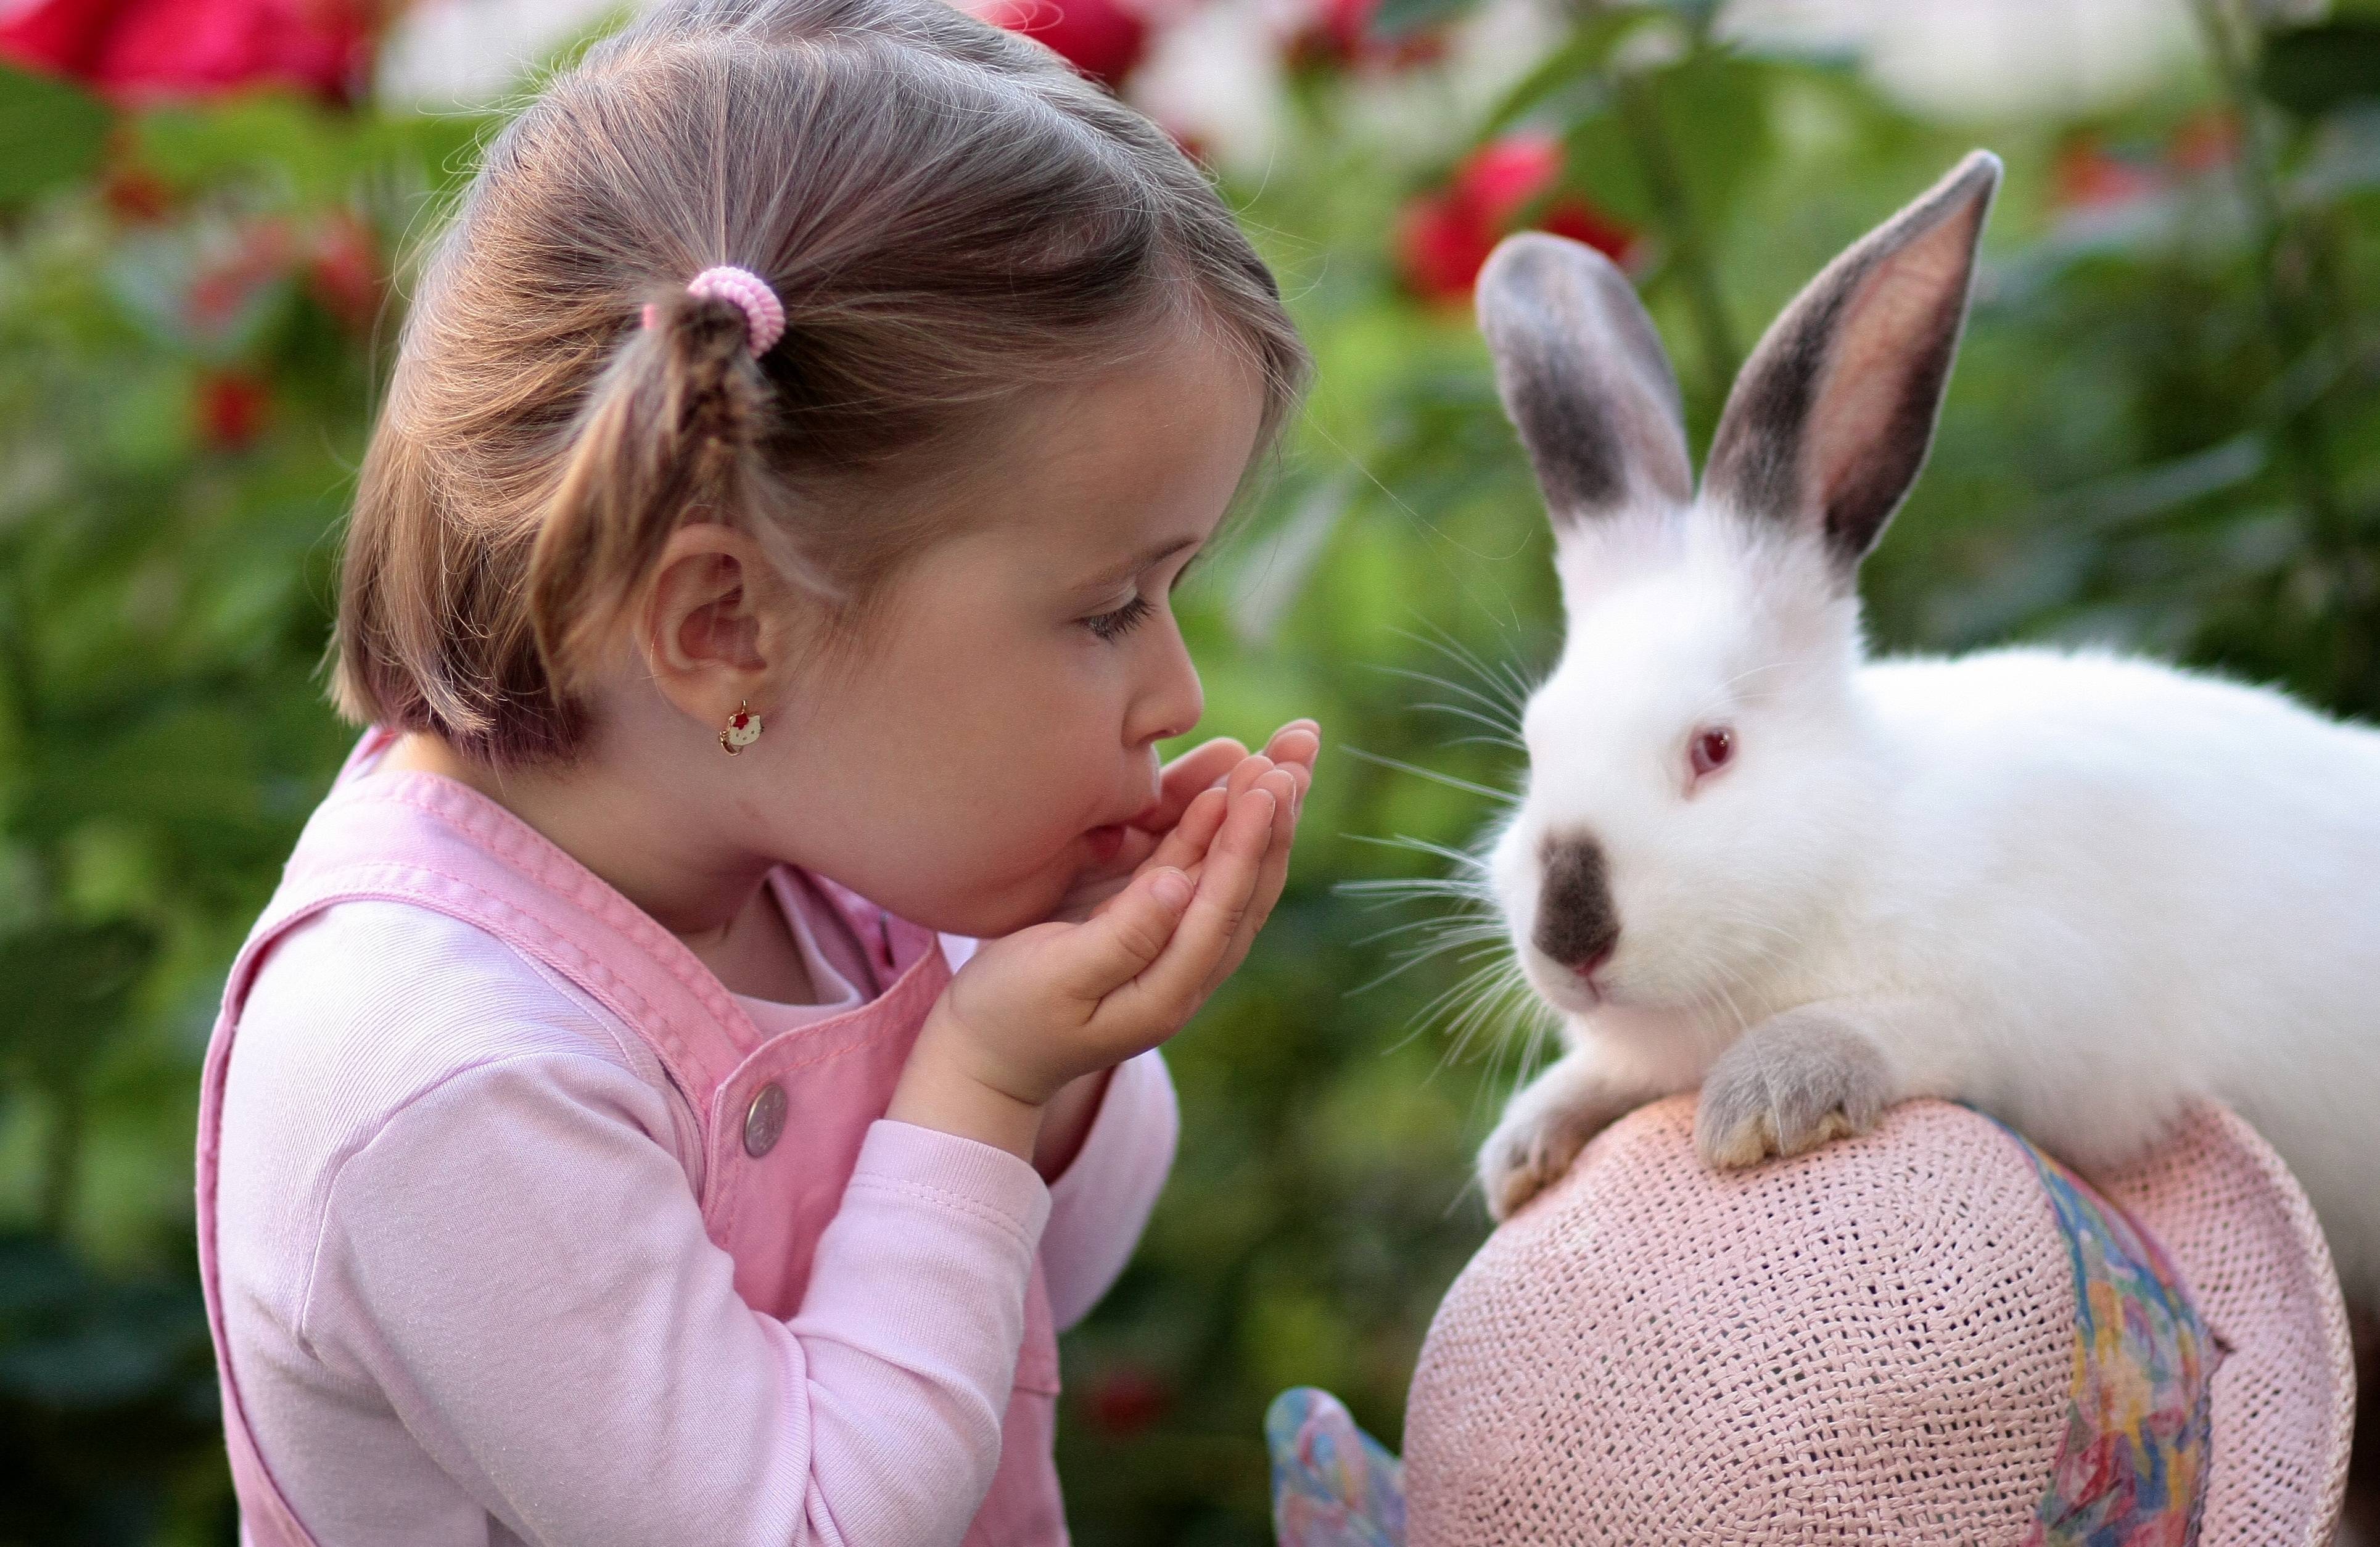 Разведение кроликов в домашних условиях: содержание, размножение и выращивание